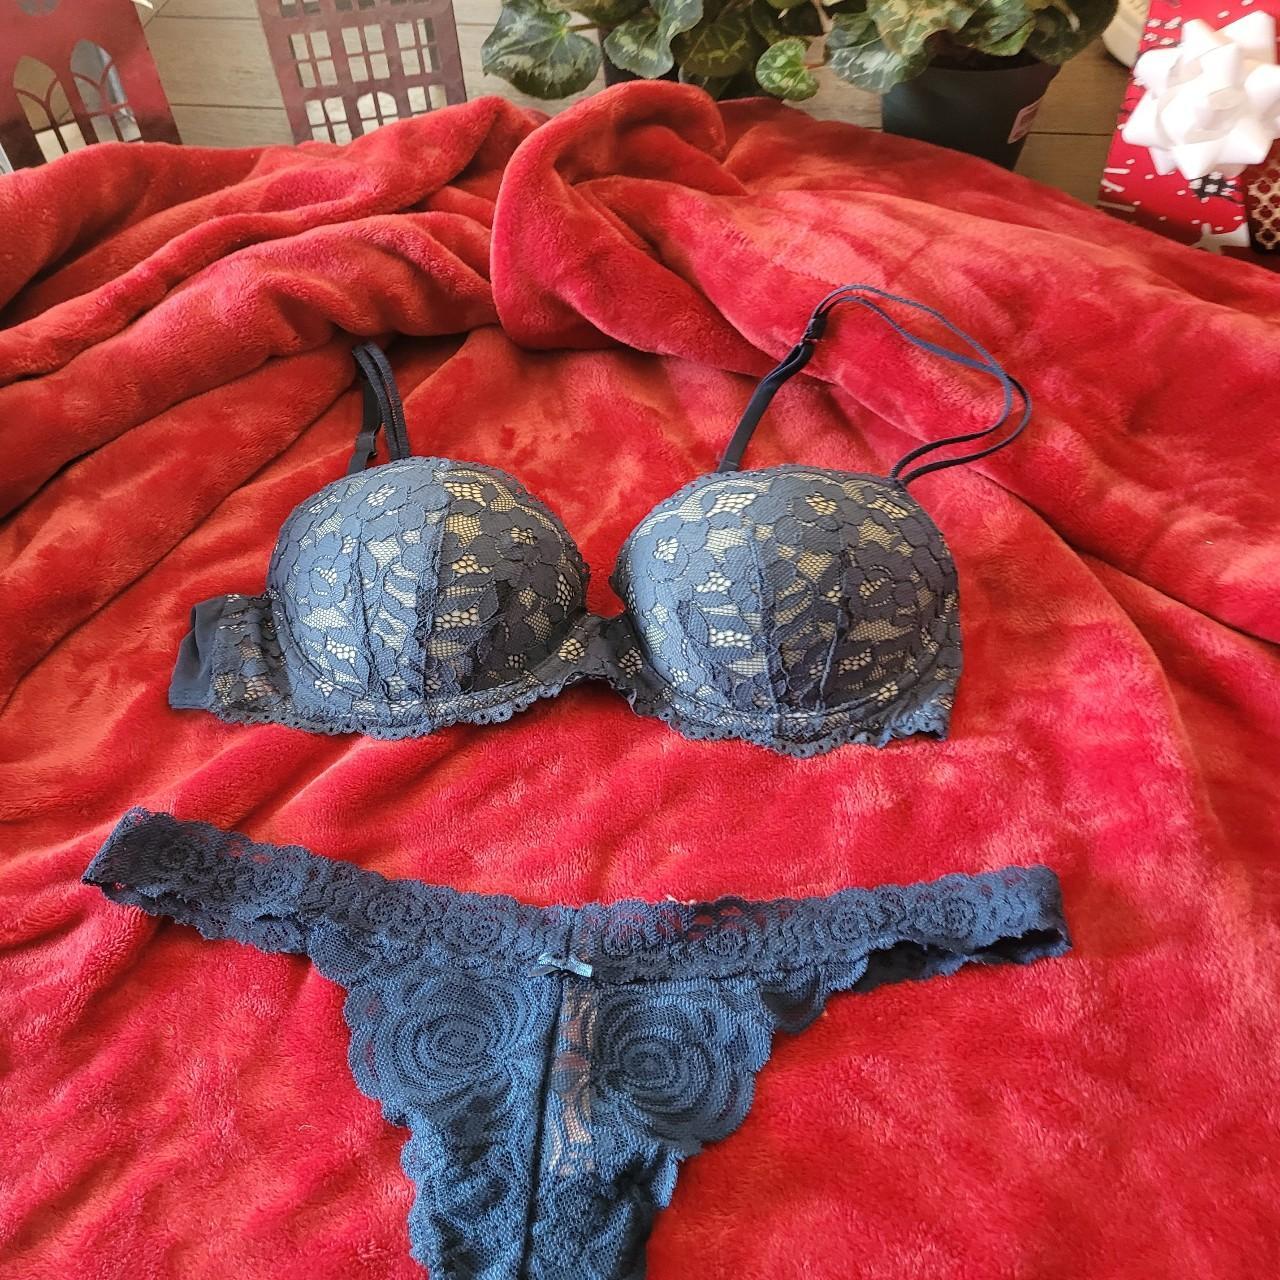 blue lace Victoria's Secret set 34b, s/m - Depop